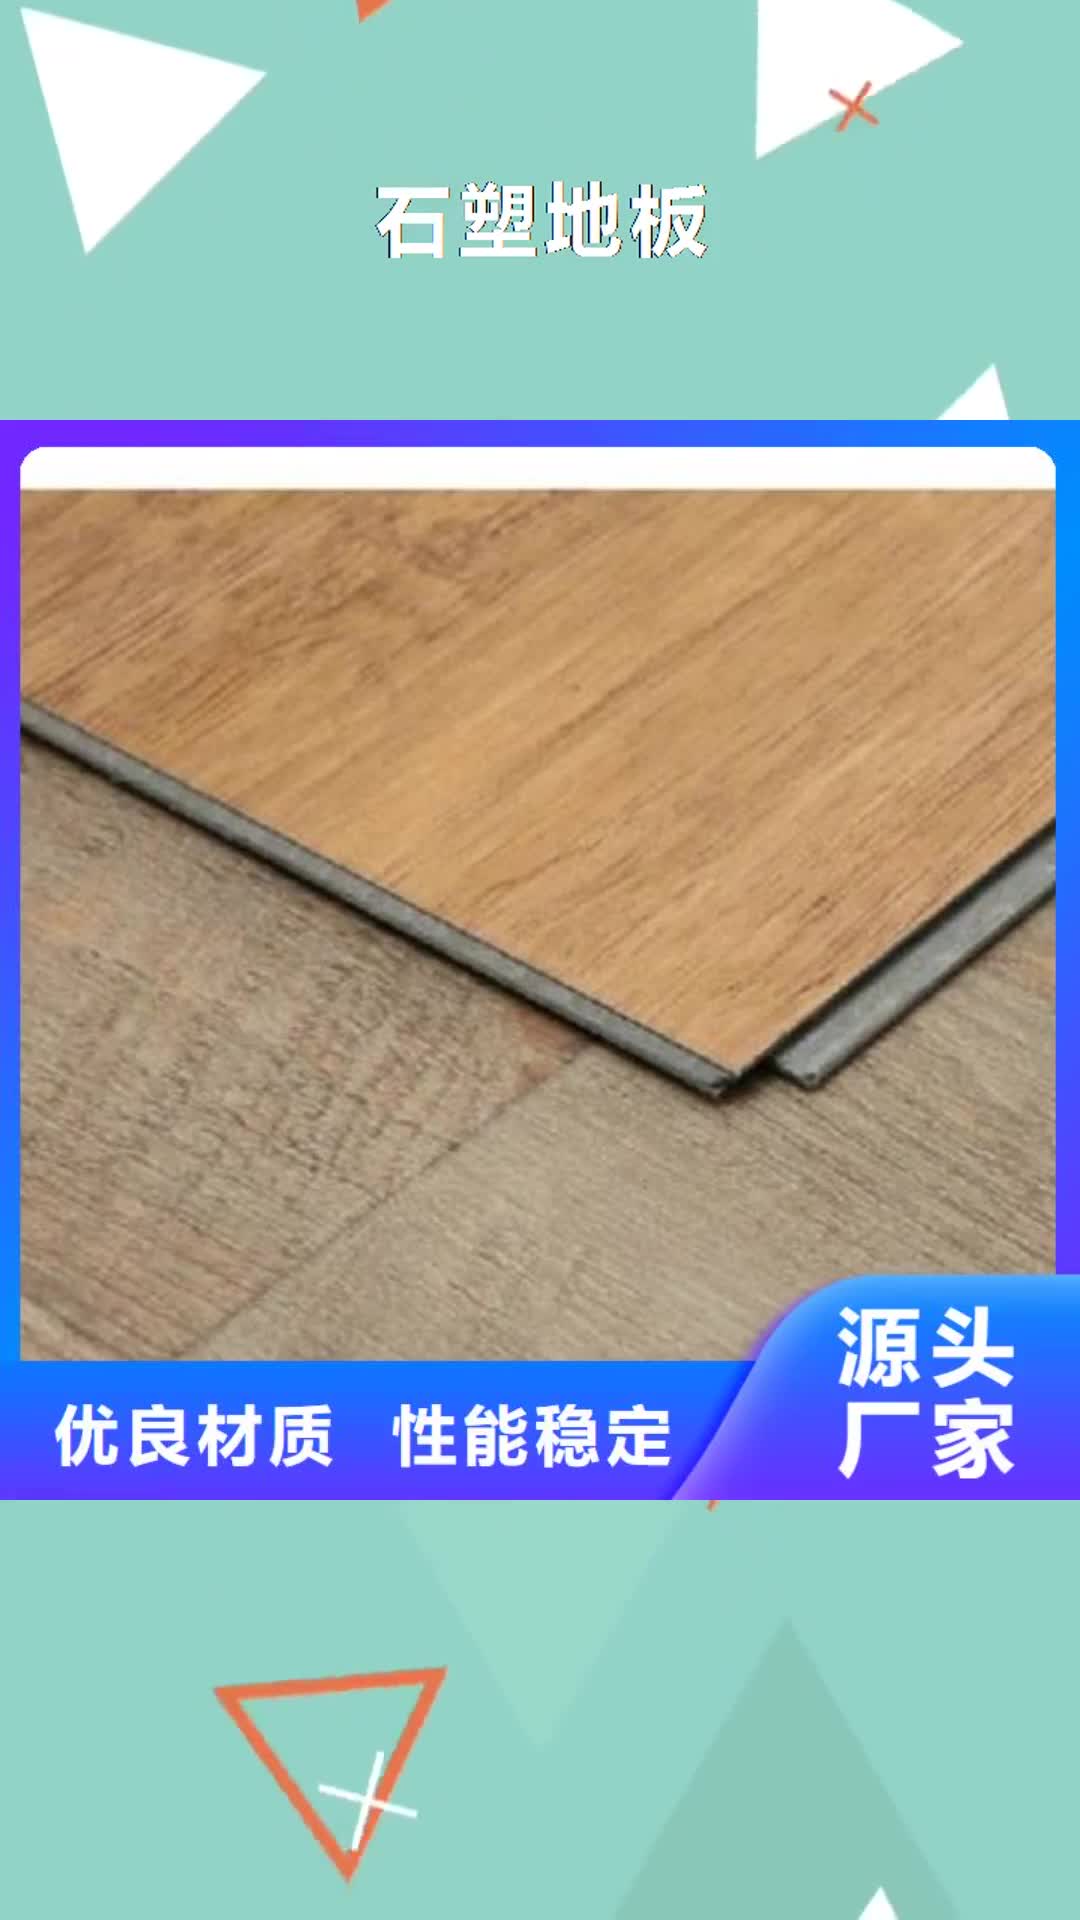 山西【石塑地板】-竹木纤维集成墙板专业设计